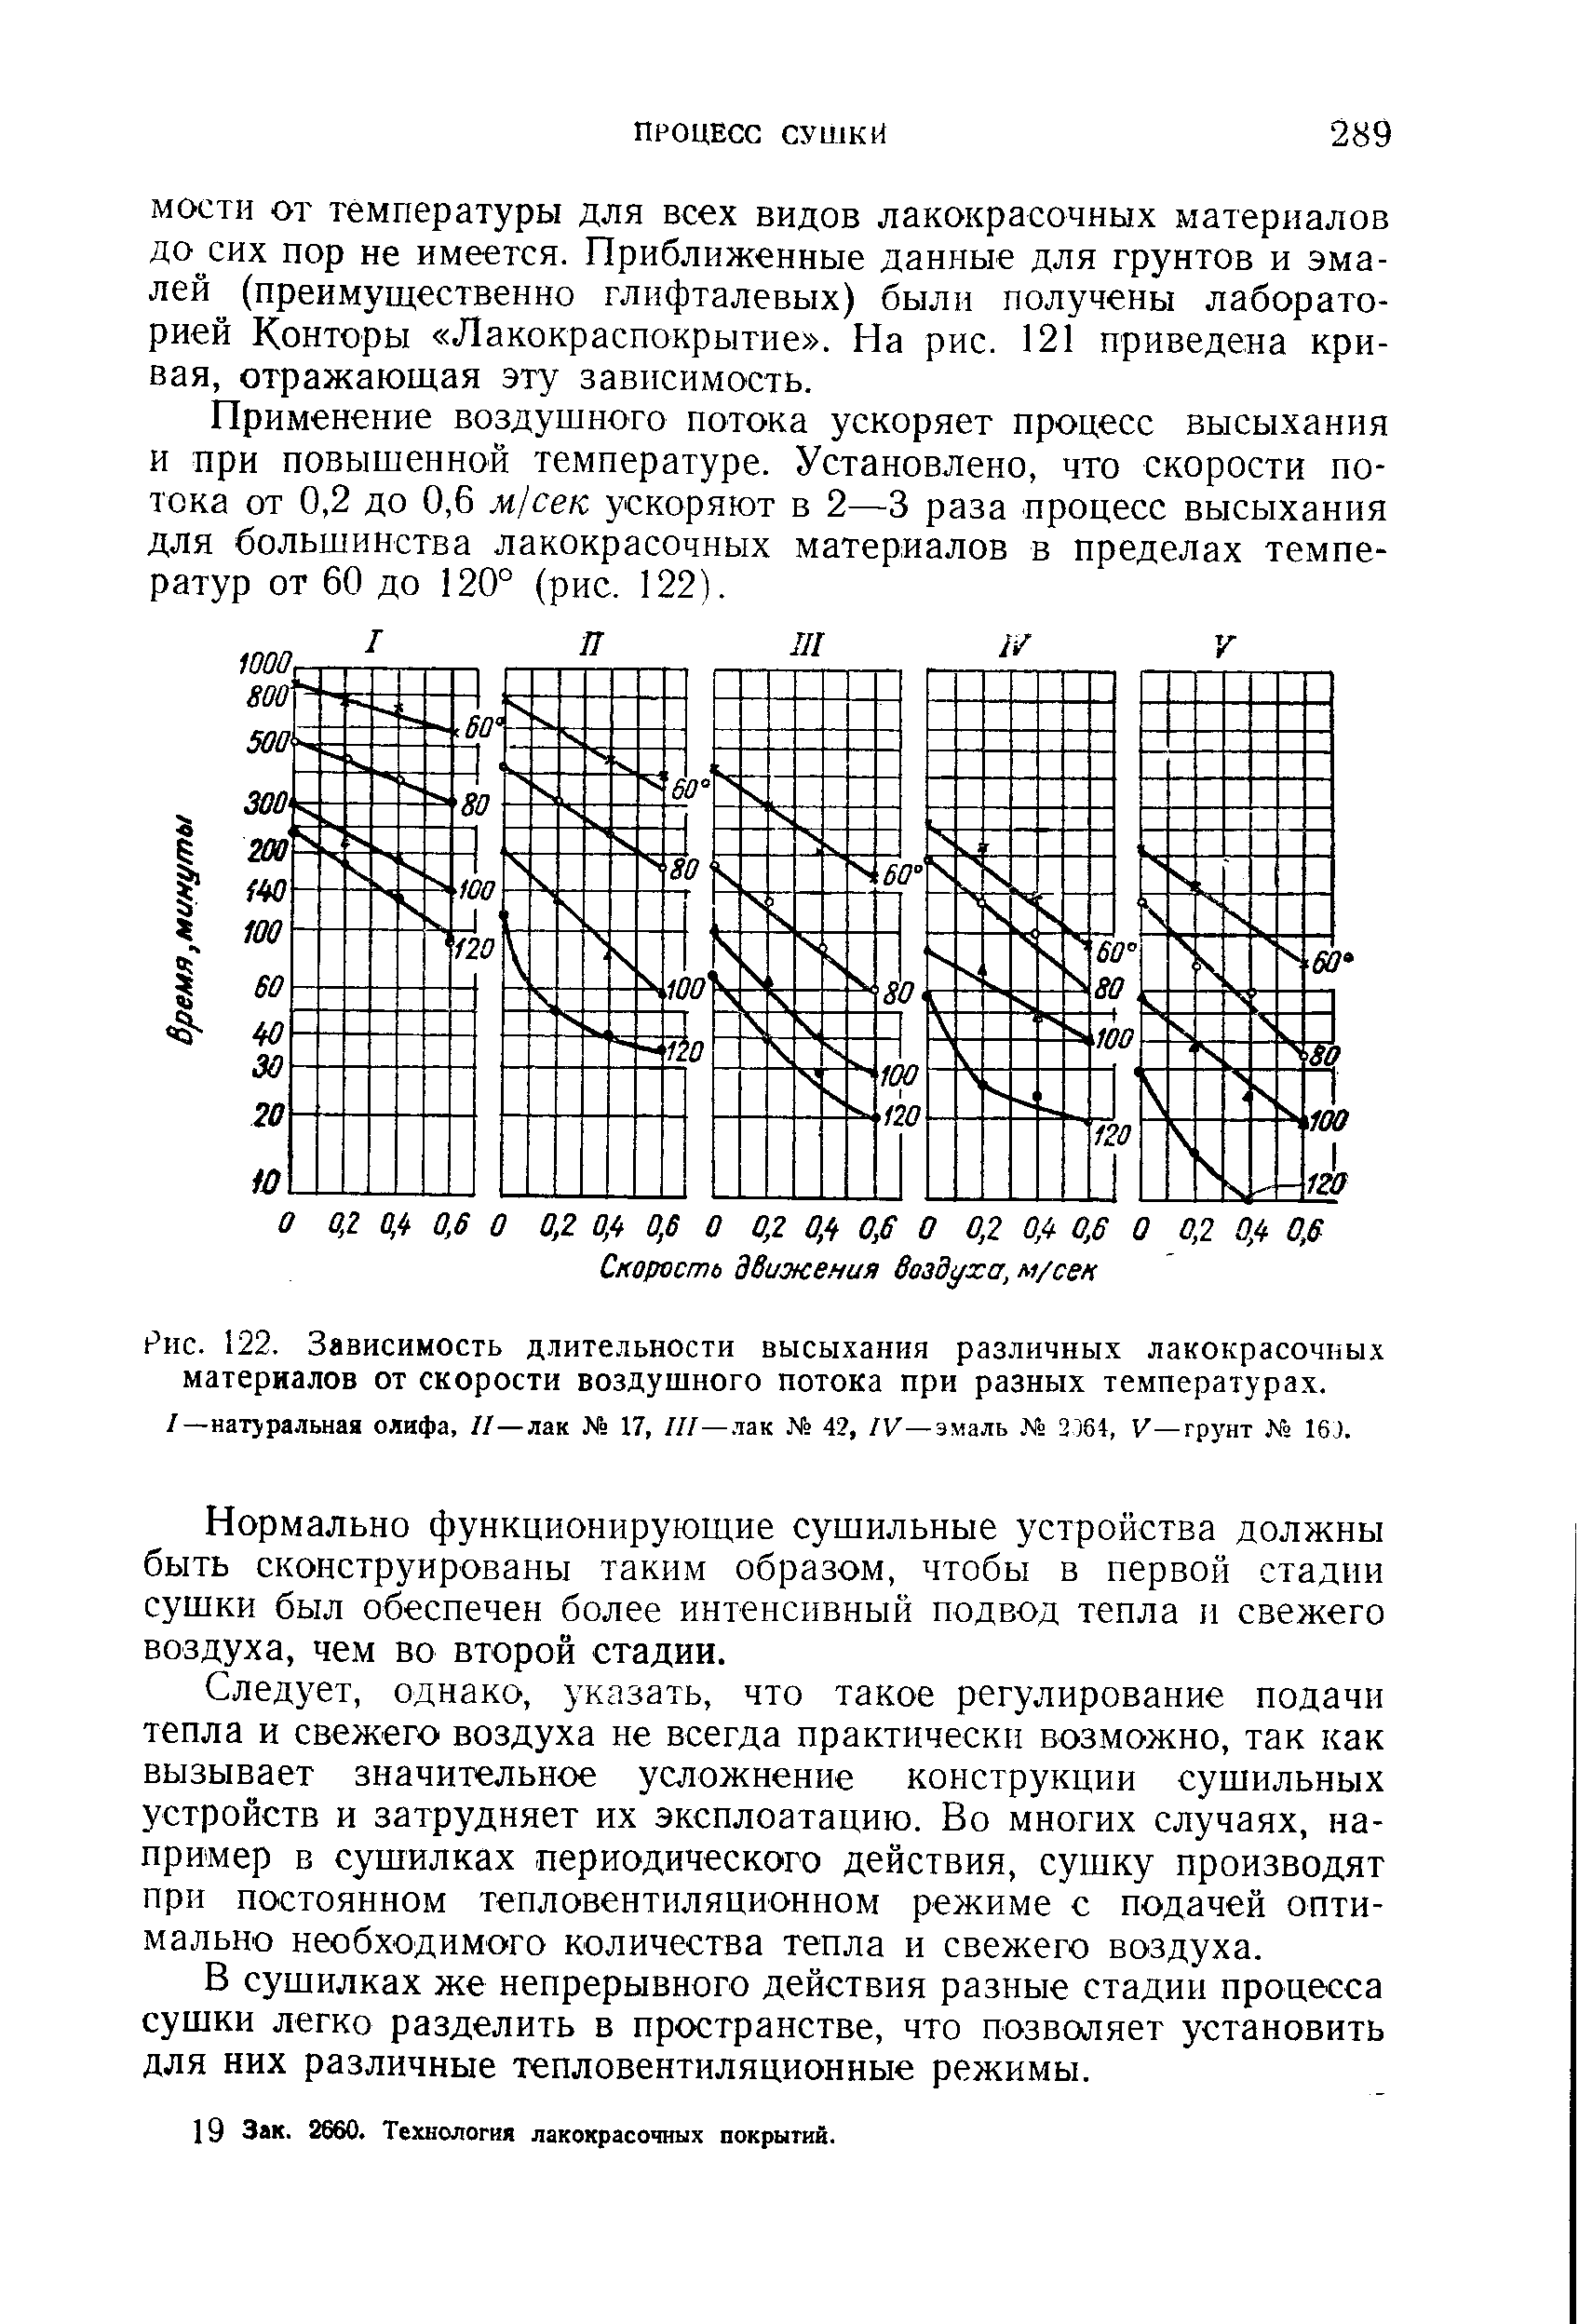 Рис. 122. Зависимость длите.чьности высыхания различных лакокрасочных материалов от <a href="/info/187579">скорости воздушного потока</a> при разных температурах.
